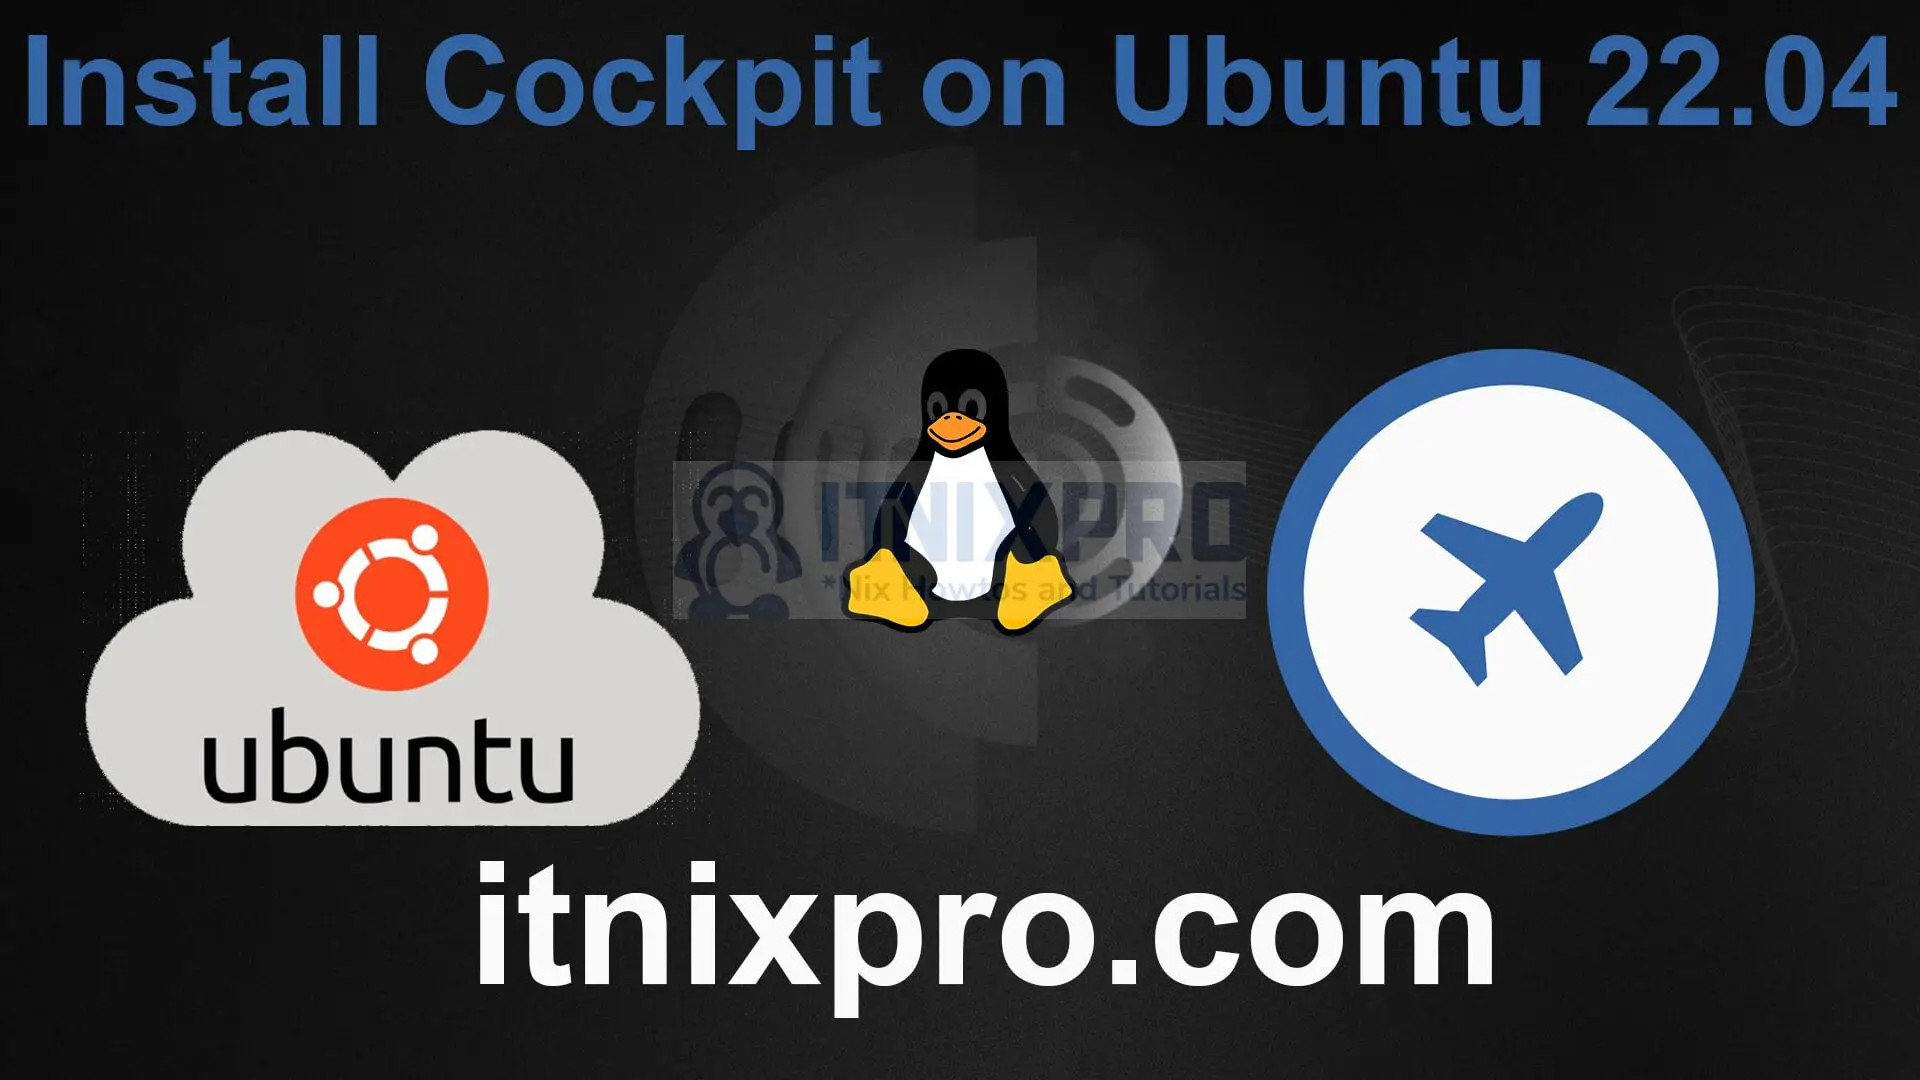 Install Cockpit on Ubuntu 22.04